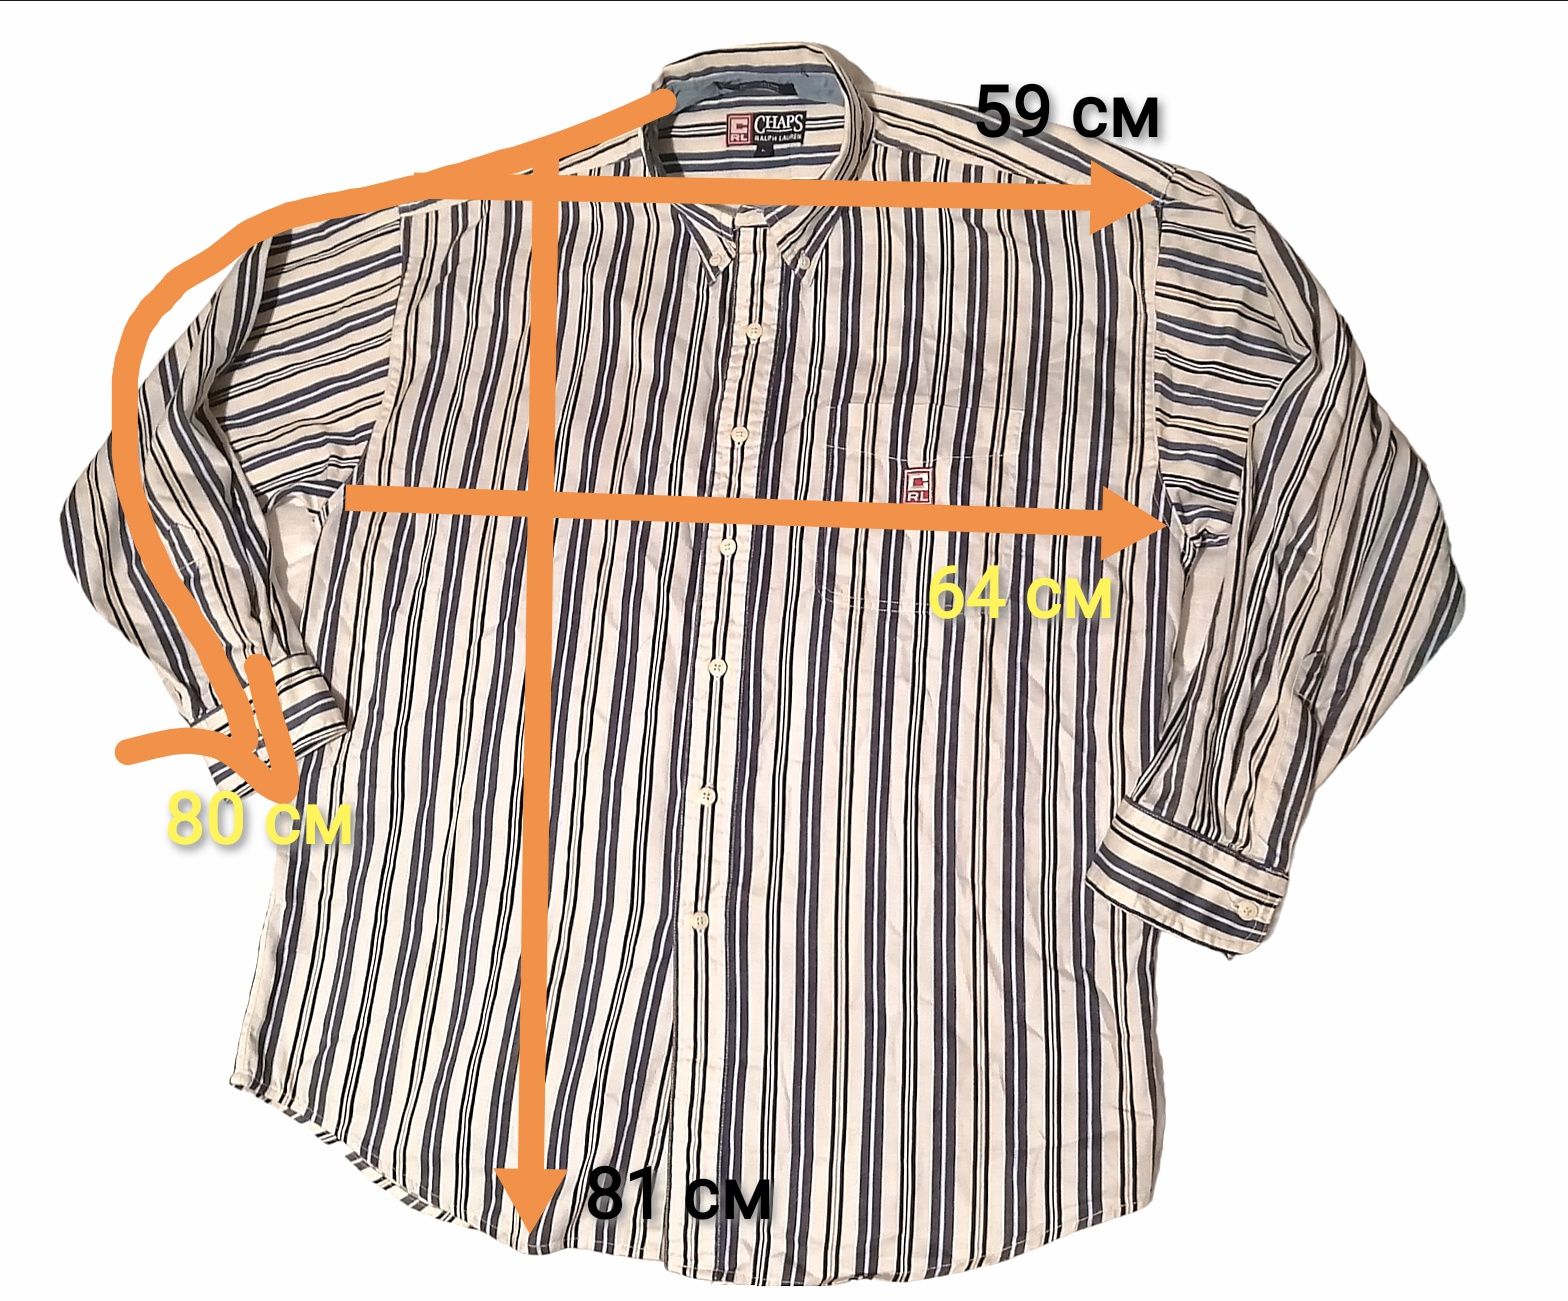 Рубашка Ralph Lauren Chaps винтажная оверсайз полоска мужская L сорочк